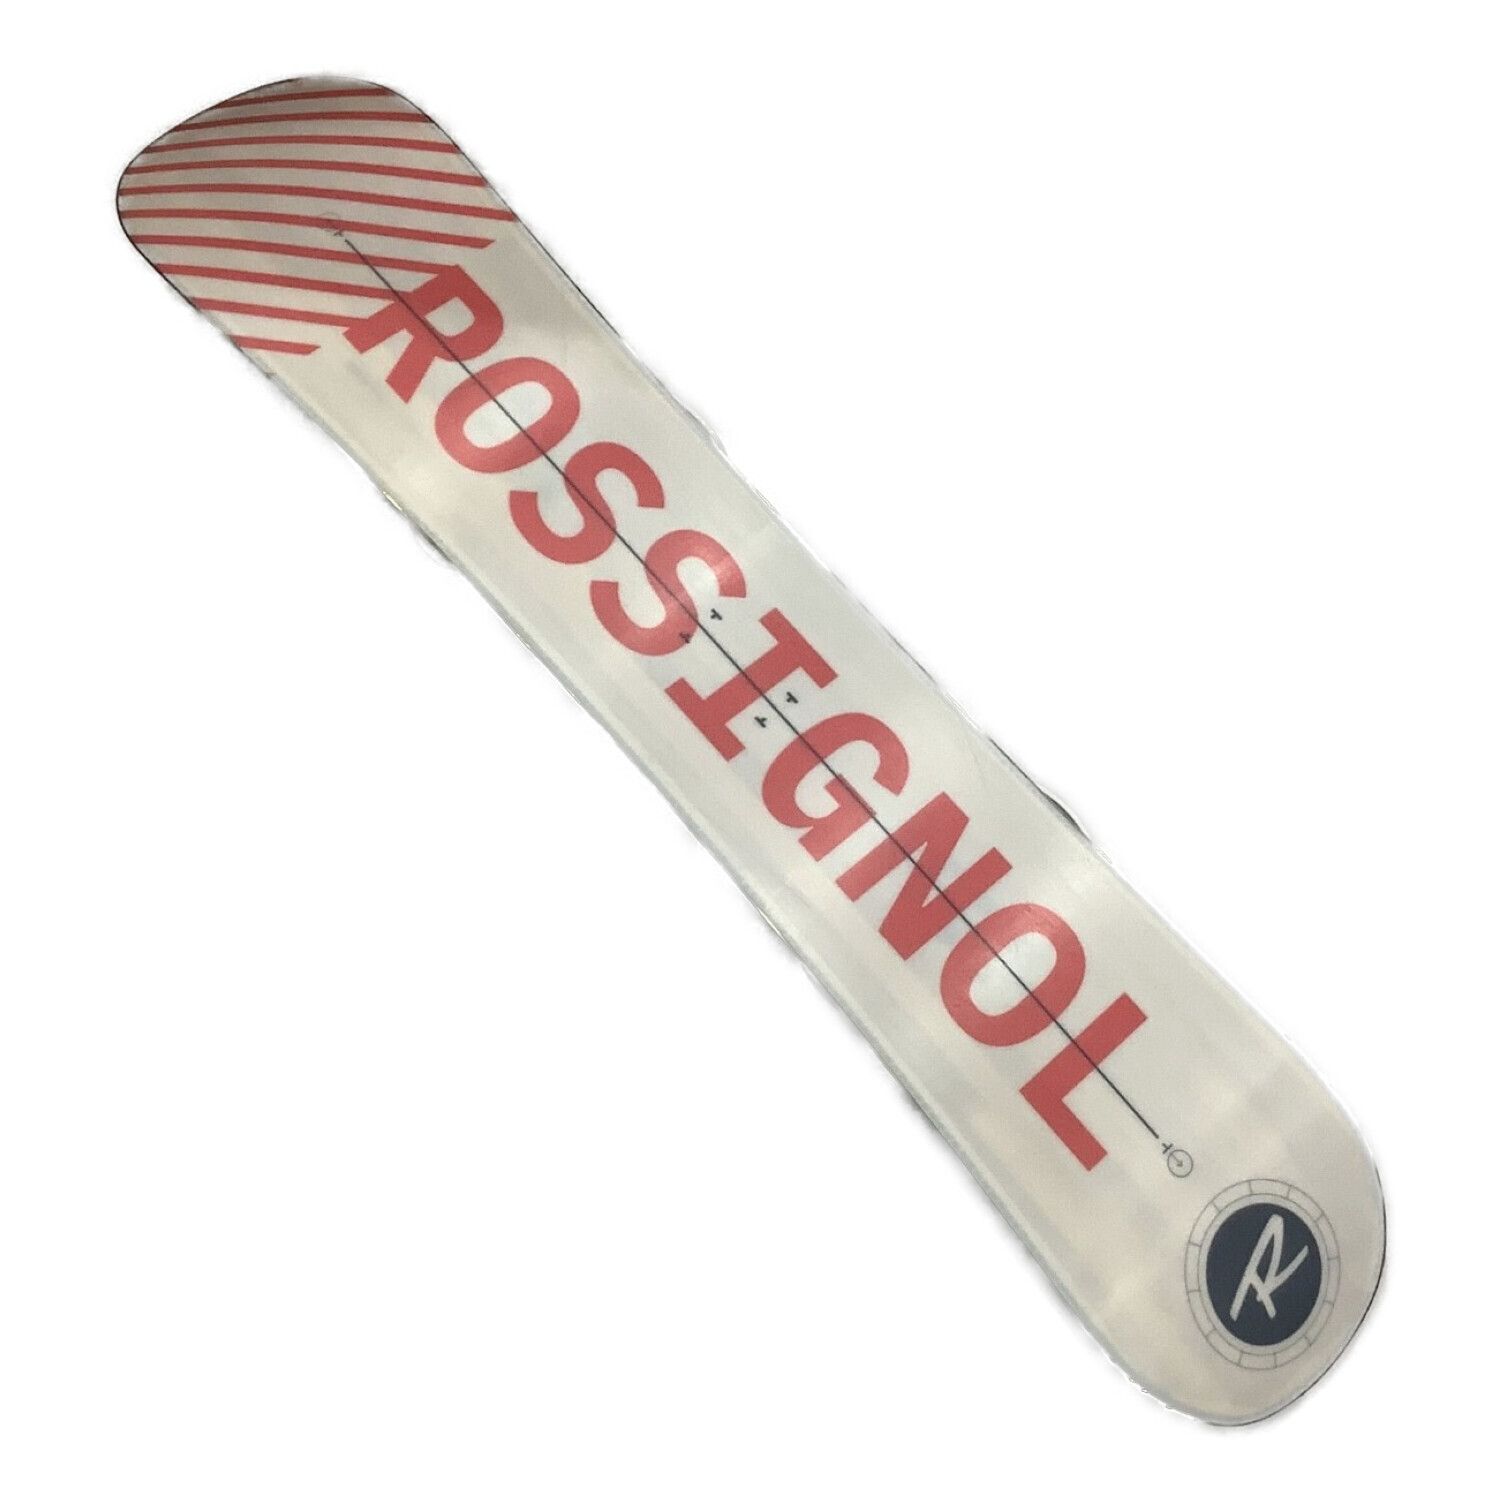 ROSSIGNOL (ロシニョール) スノーボード 151cm ホワイト×ブラック 20